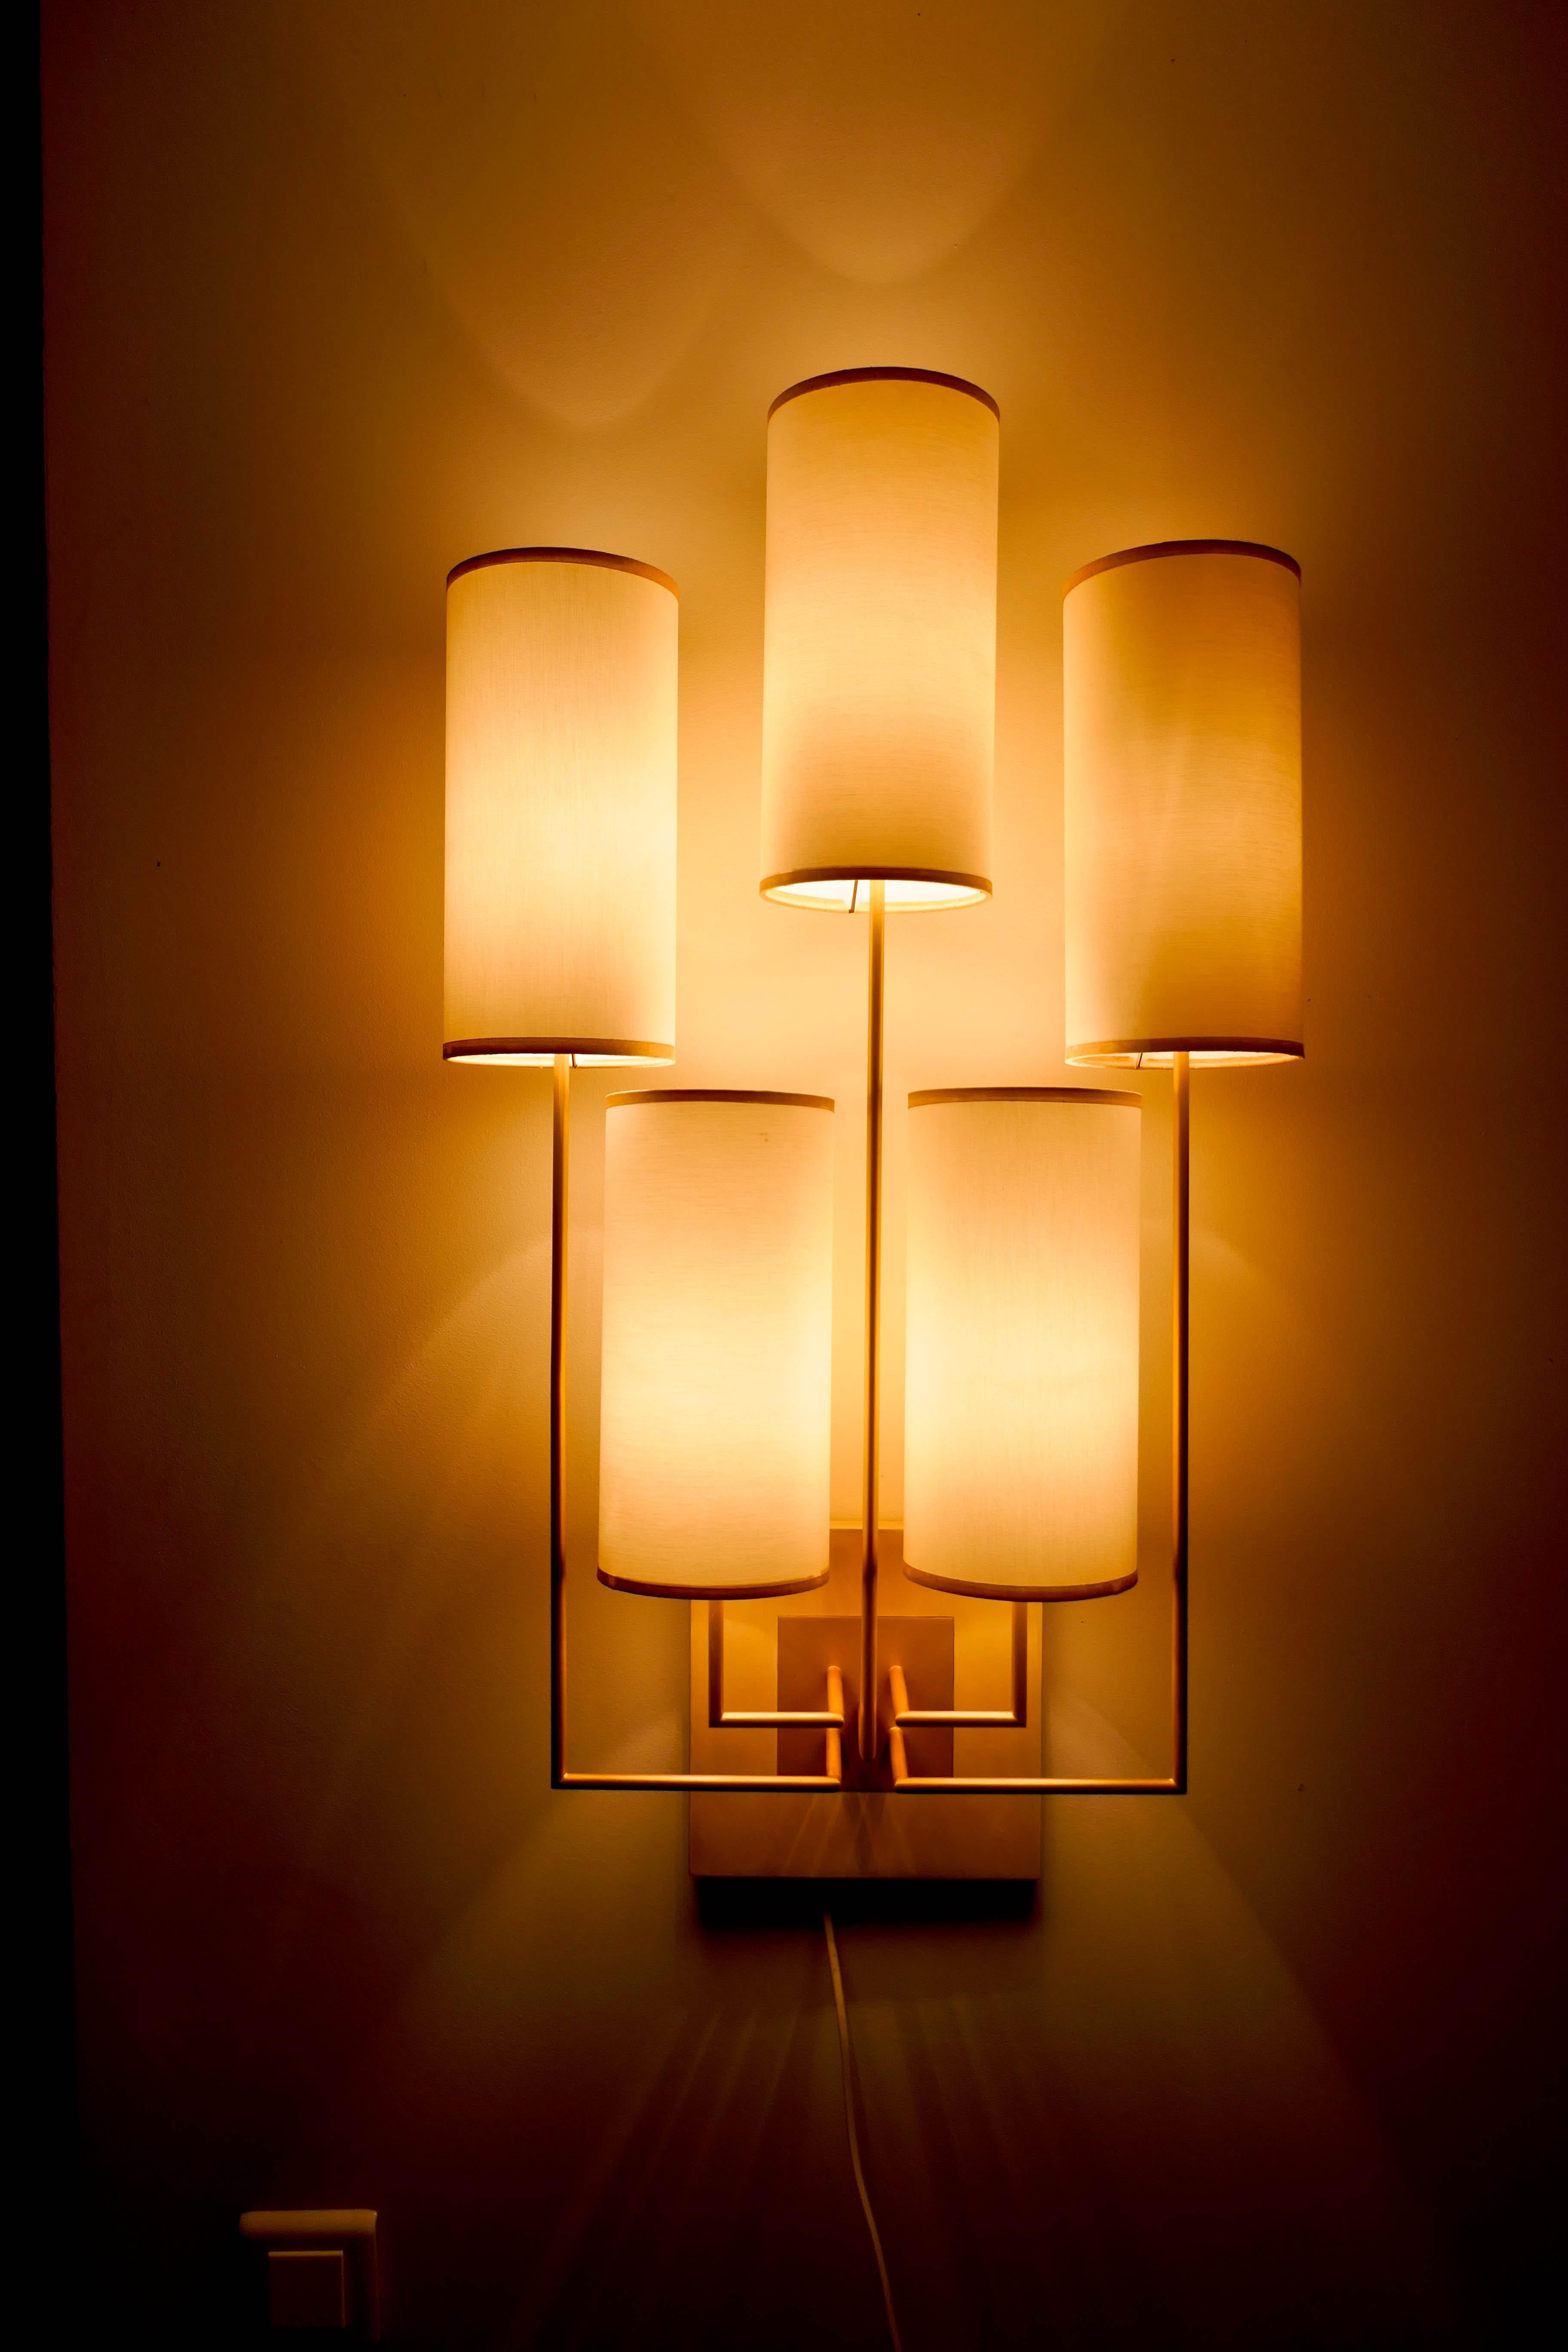 Ein Paar Wandleuchten aus Metall mit goldener Patina, die Sockel sind aus Kastanienholz. Die Lampenschirme sind mit weißem Stoff bezogen.
Diese Leuchte ist neu, aber sie wurde für eine Ausstellung verwendet.